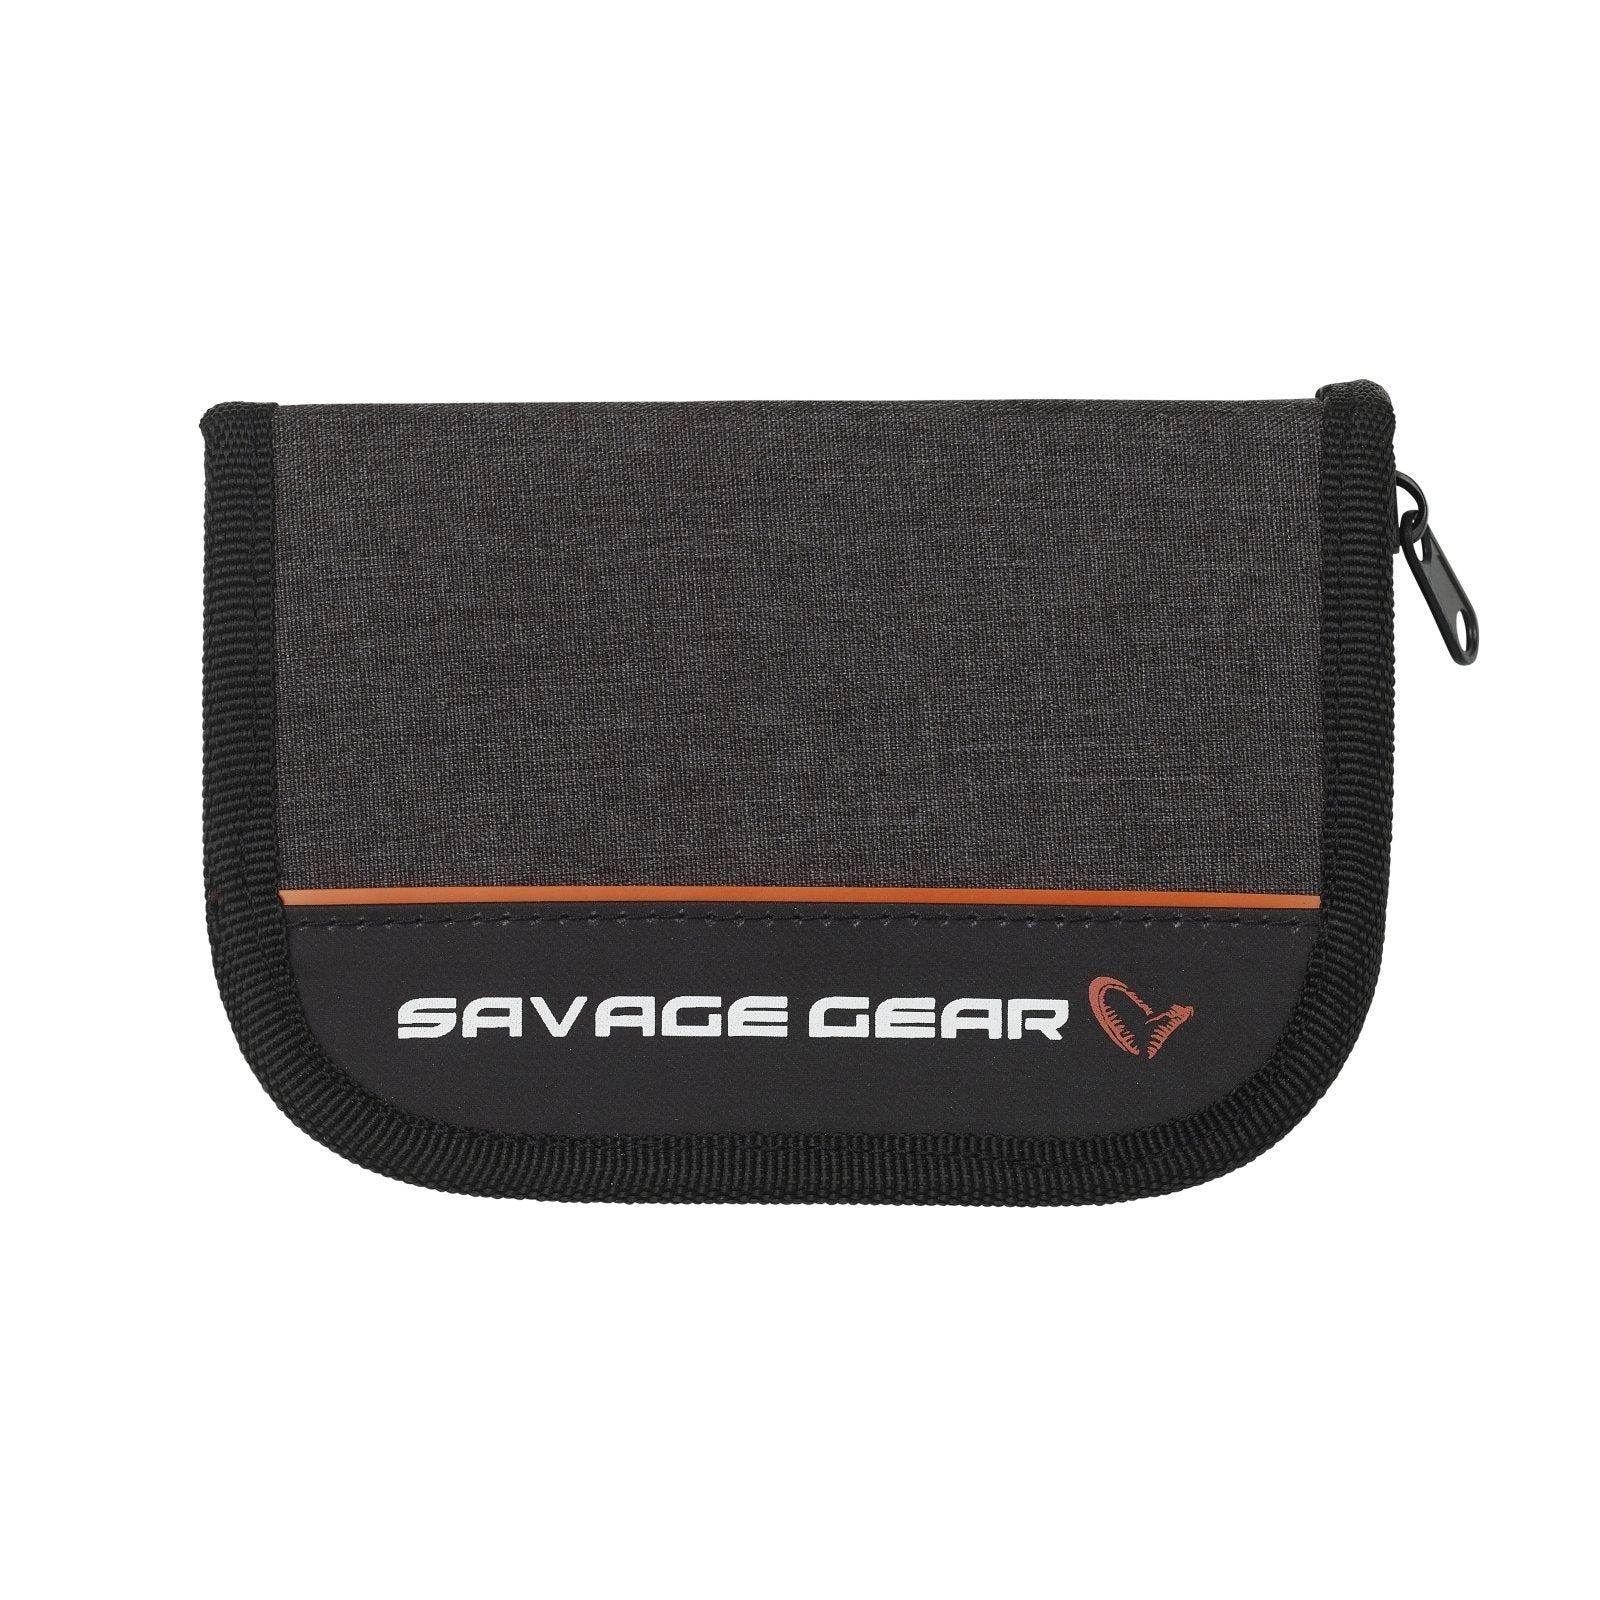 Savage Gear Zipper Wallet2 1